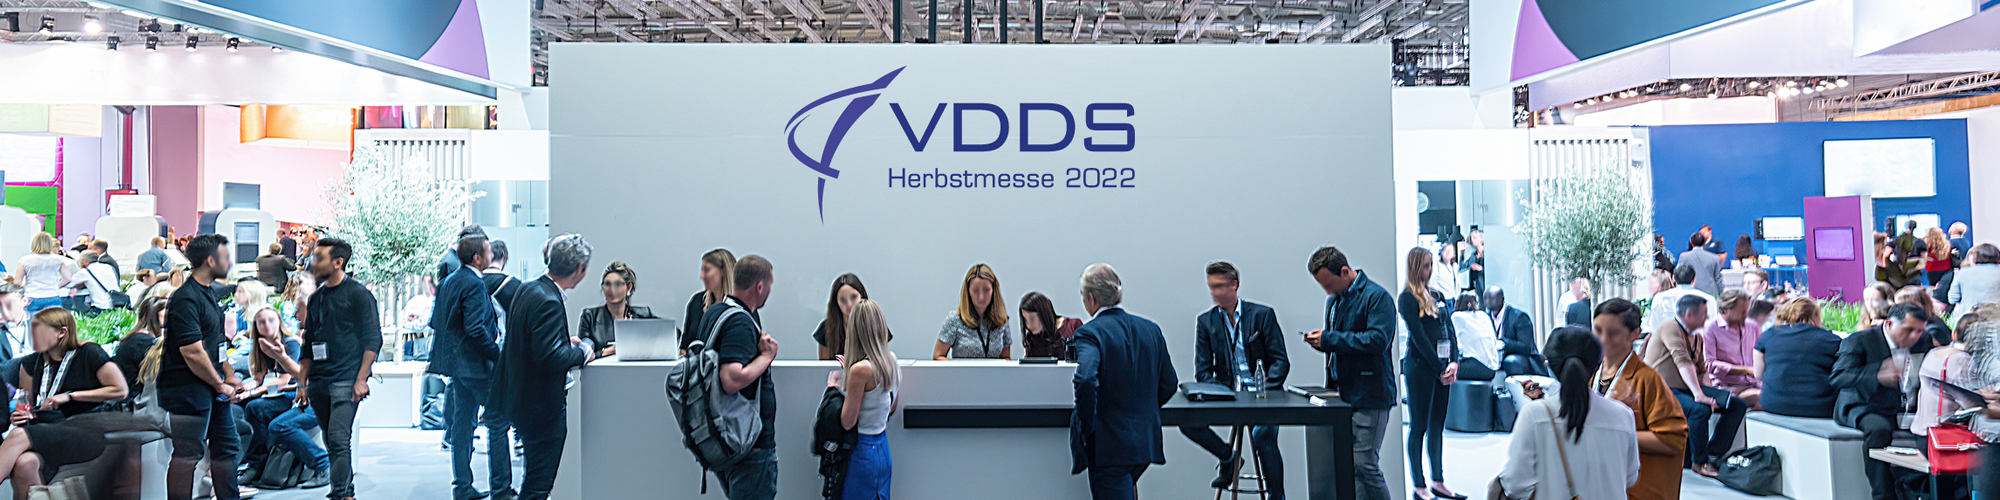 VDDS Herbstmesse 2022 - Verband Deutscher Dental-Software Unternehmen